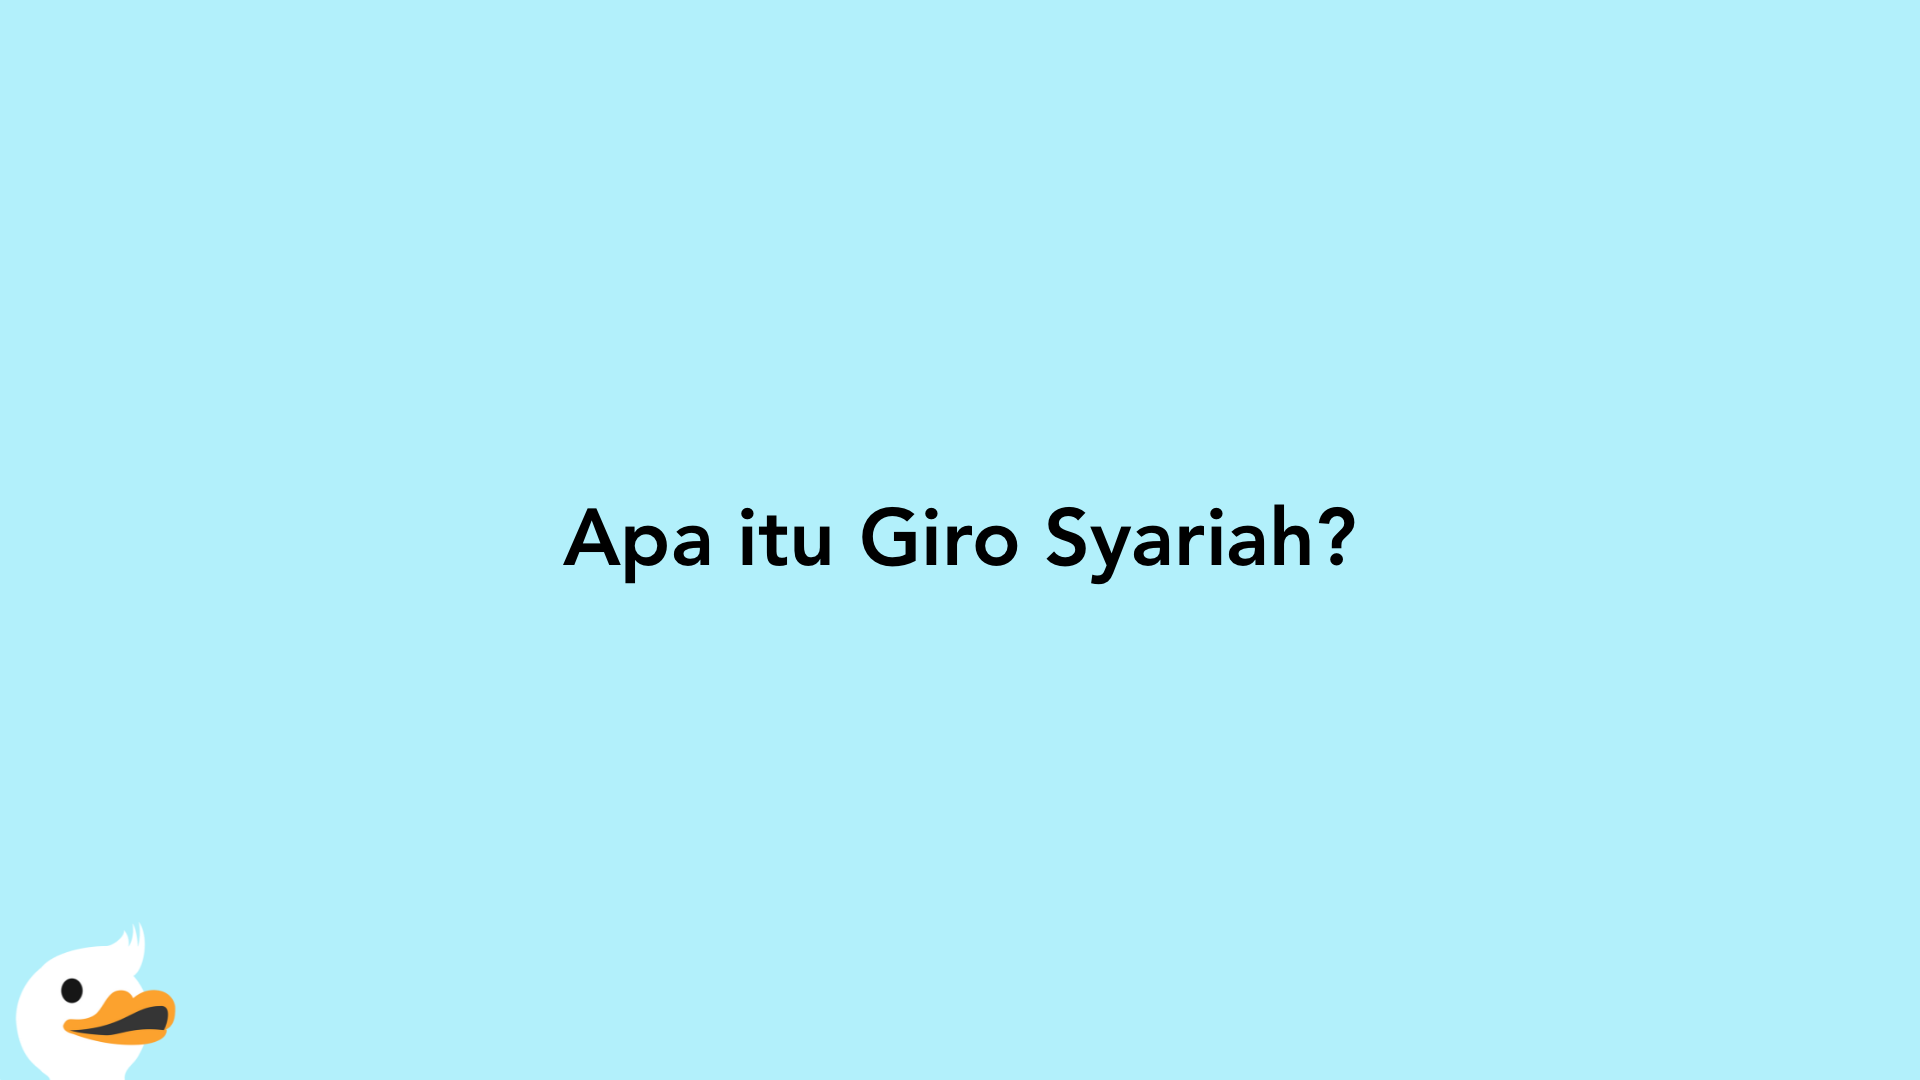 Apa itu Giro Syariah?